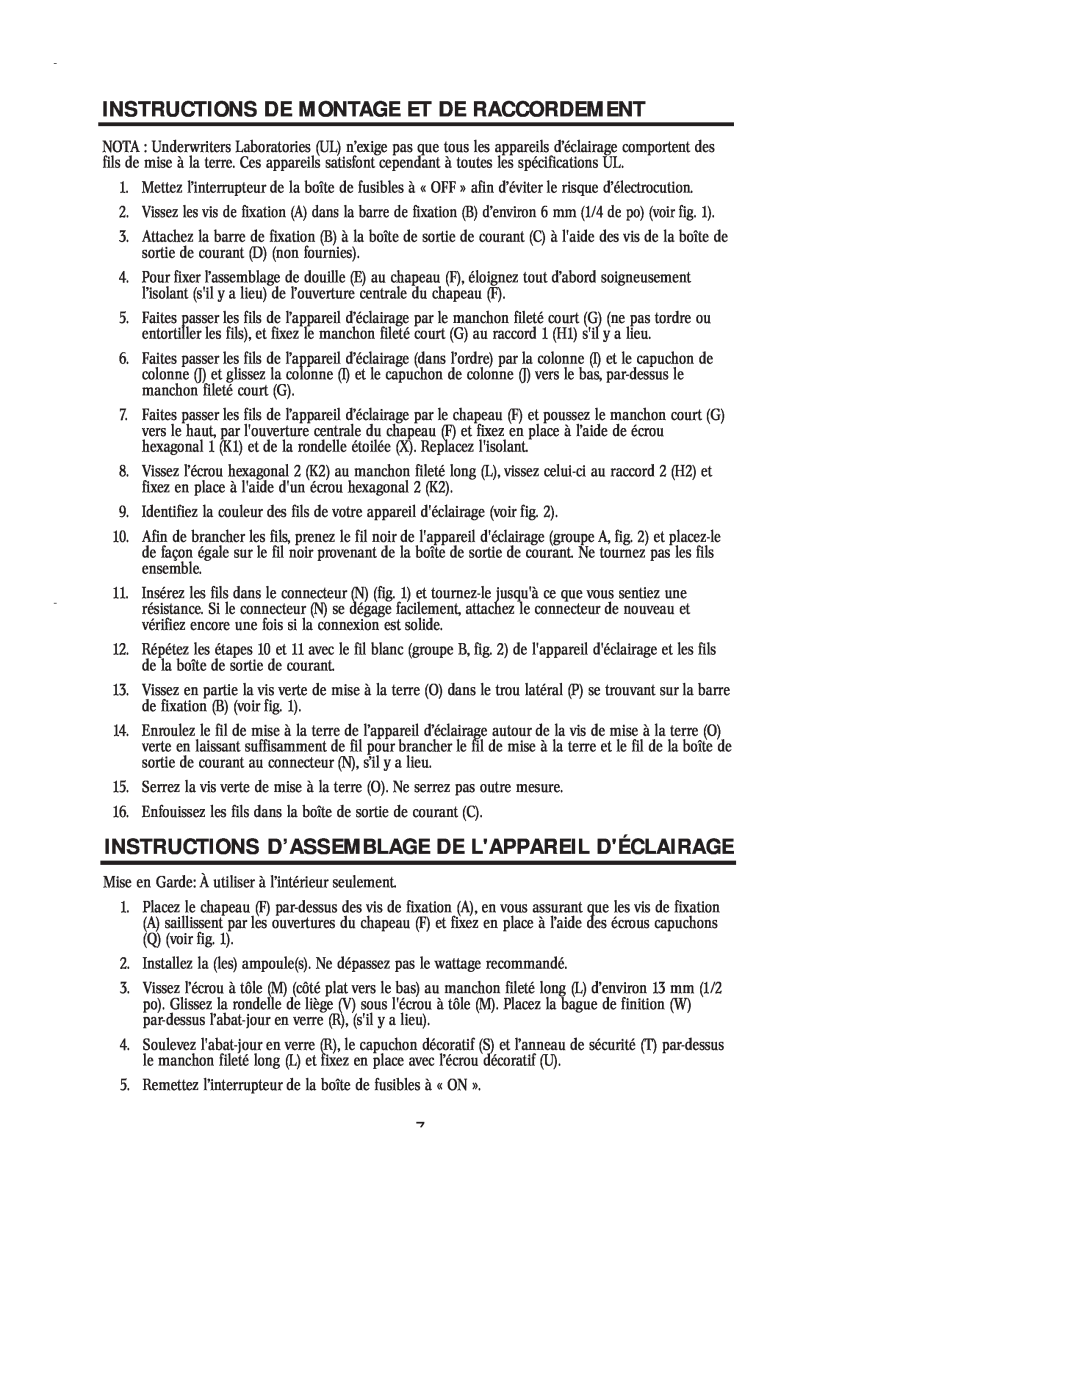 Westinghouse 43005 Instructions D’Assemblage De Lappareil Déclairage, Instructions De Montage Et De Raccordement 